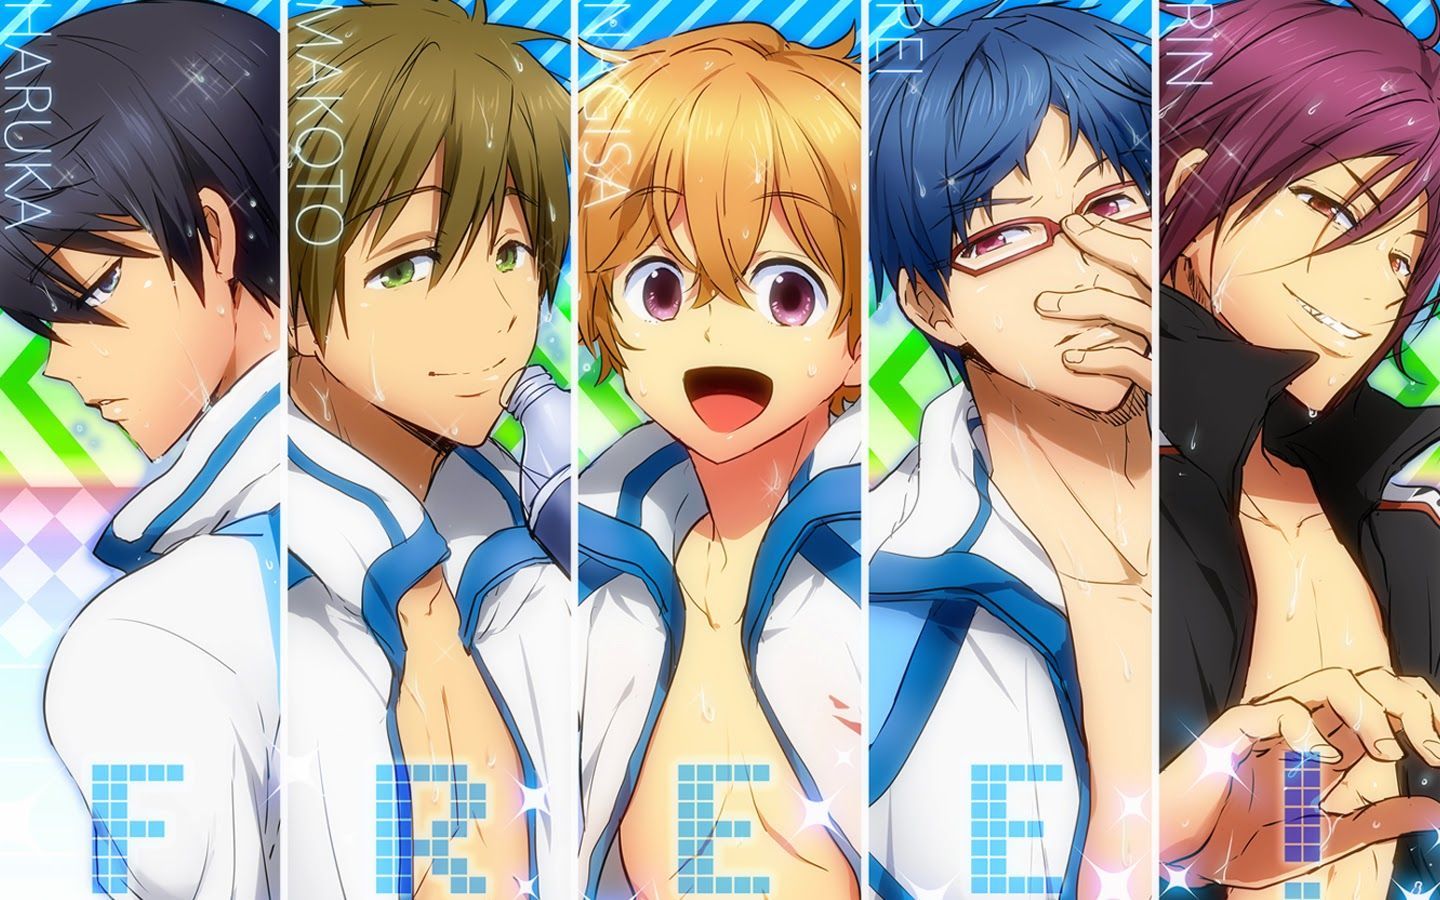 Free Swimming Anime. Free Iwatobi Swim Club Anime. Free Iwatobi